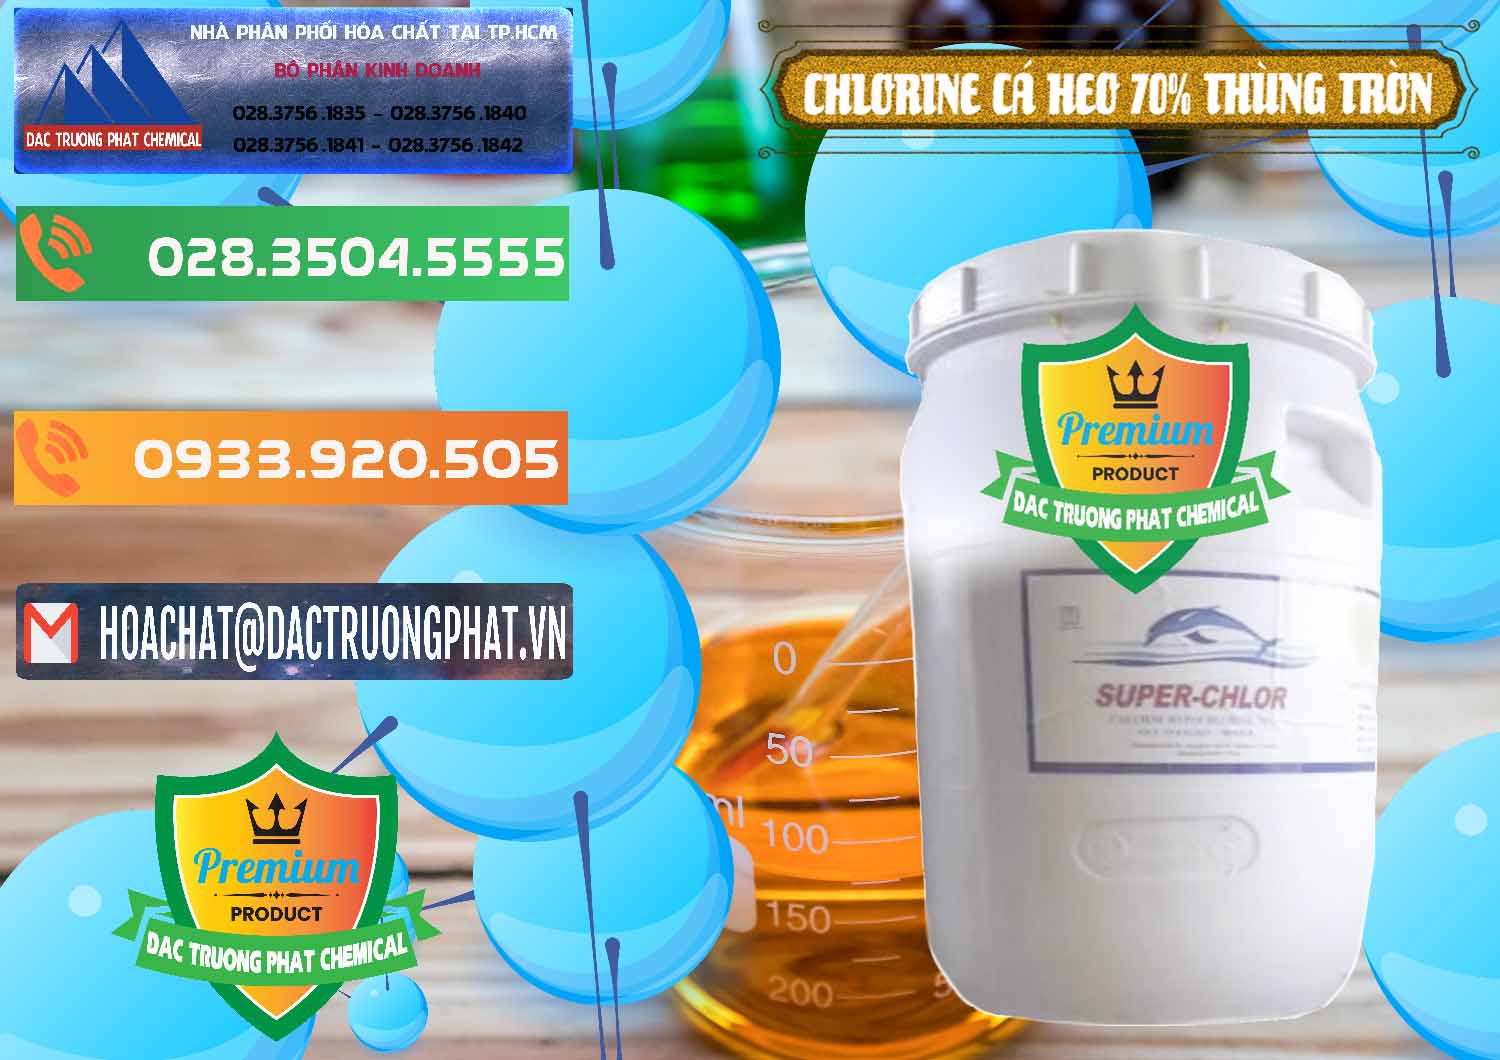 Bán _ phân phối Clorin - Chlorine Cá Heo 70% Super Chlor Thùng Tròn Nắp Trắng Trung Quốc China - 0239 - Đơn vị chuyên phân phối và cung ứng hóa chất tại TP.HCM - hoachatxulynuoc.com.vn